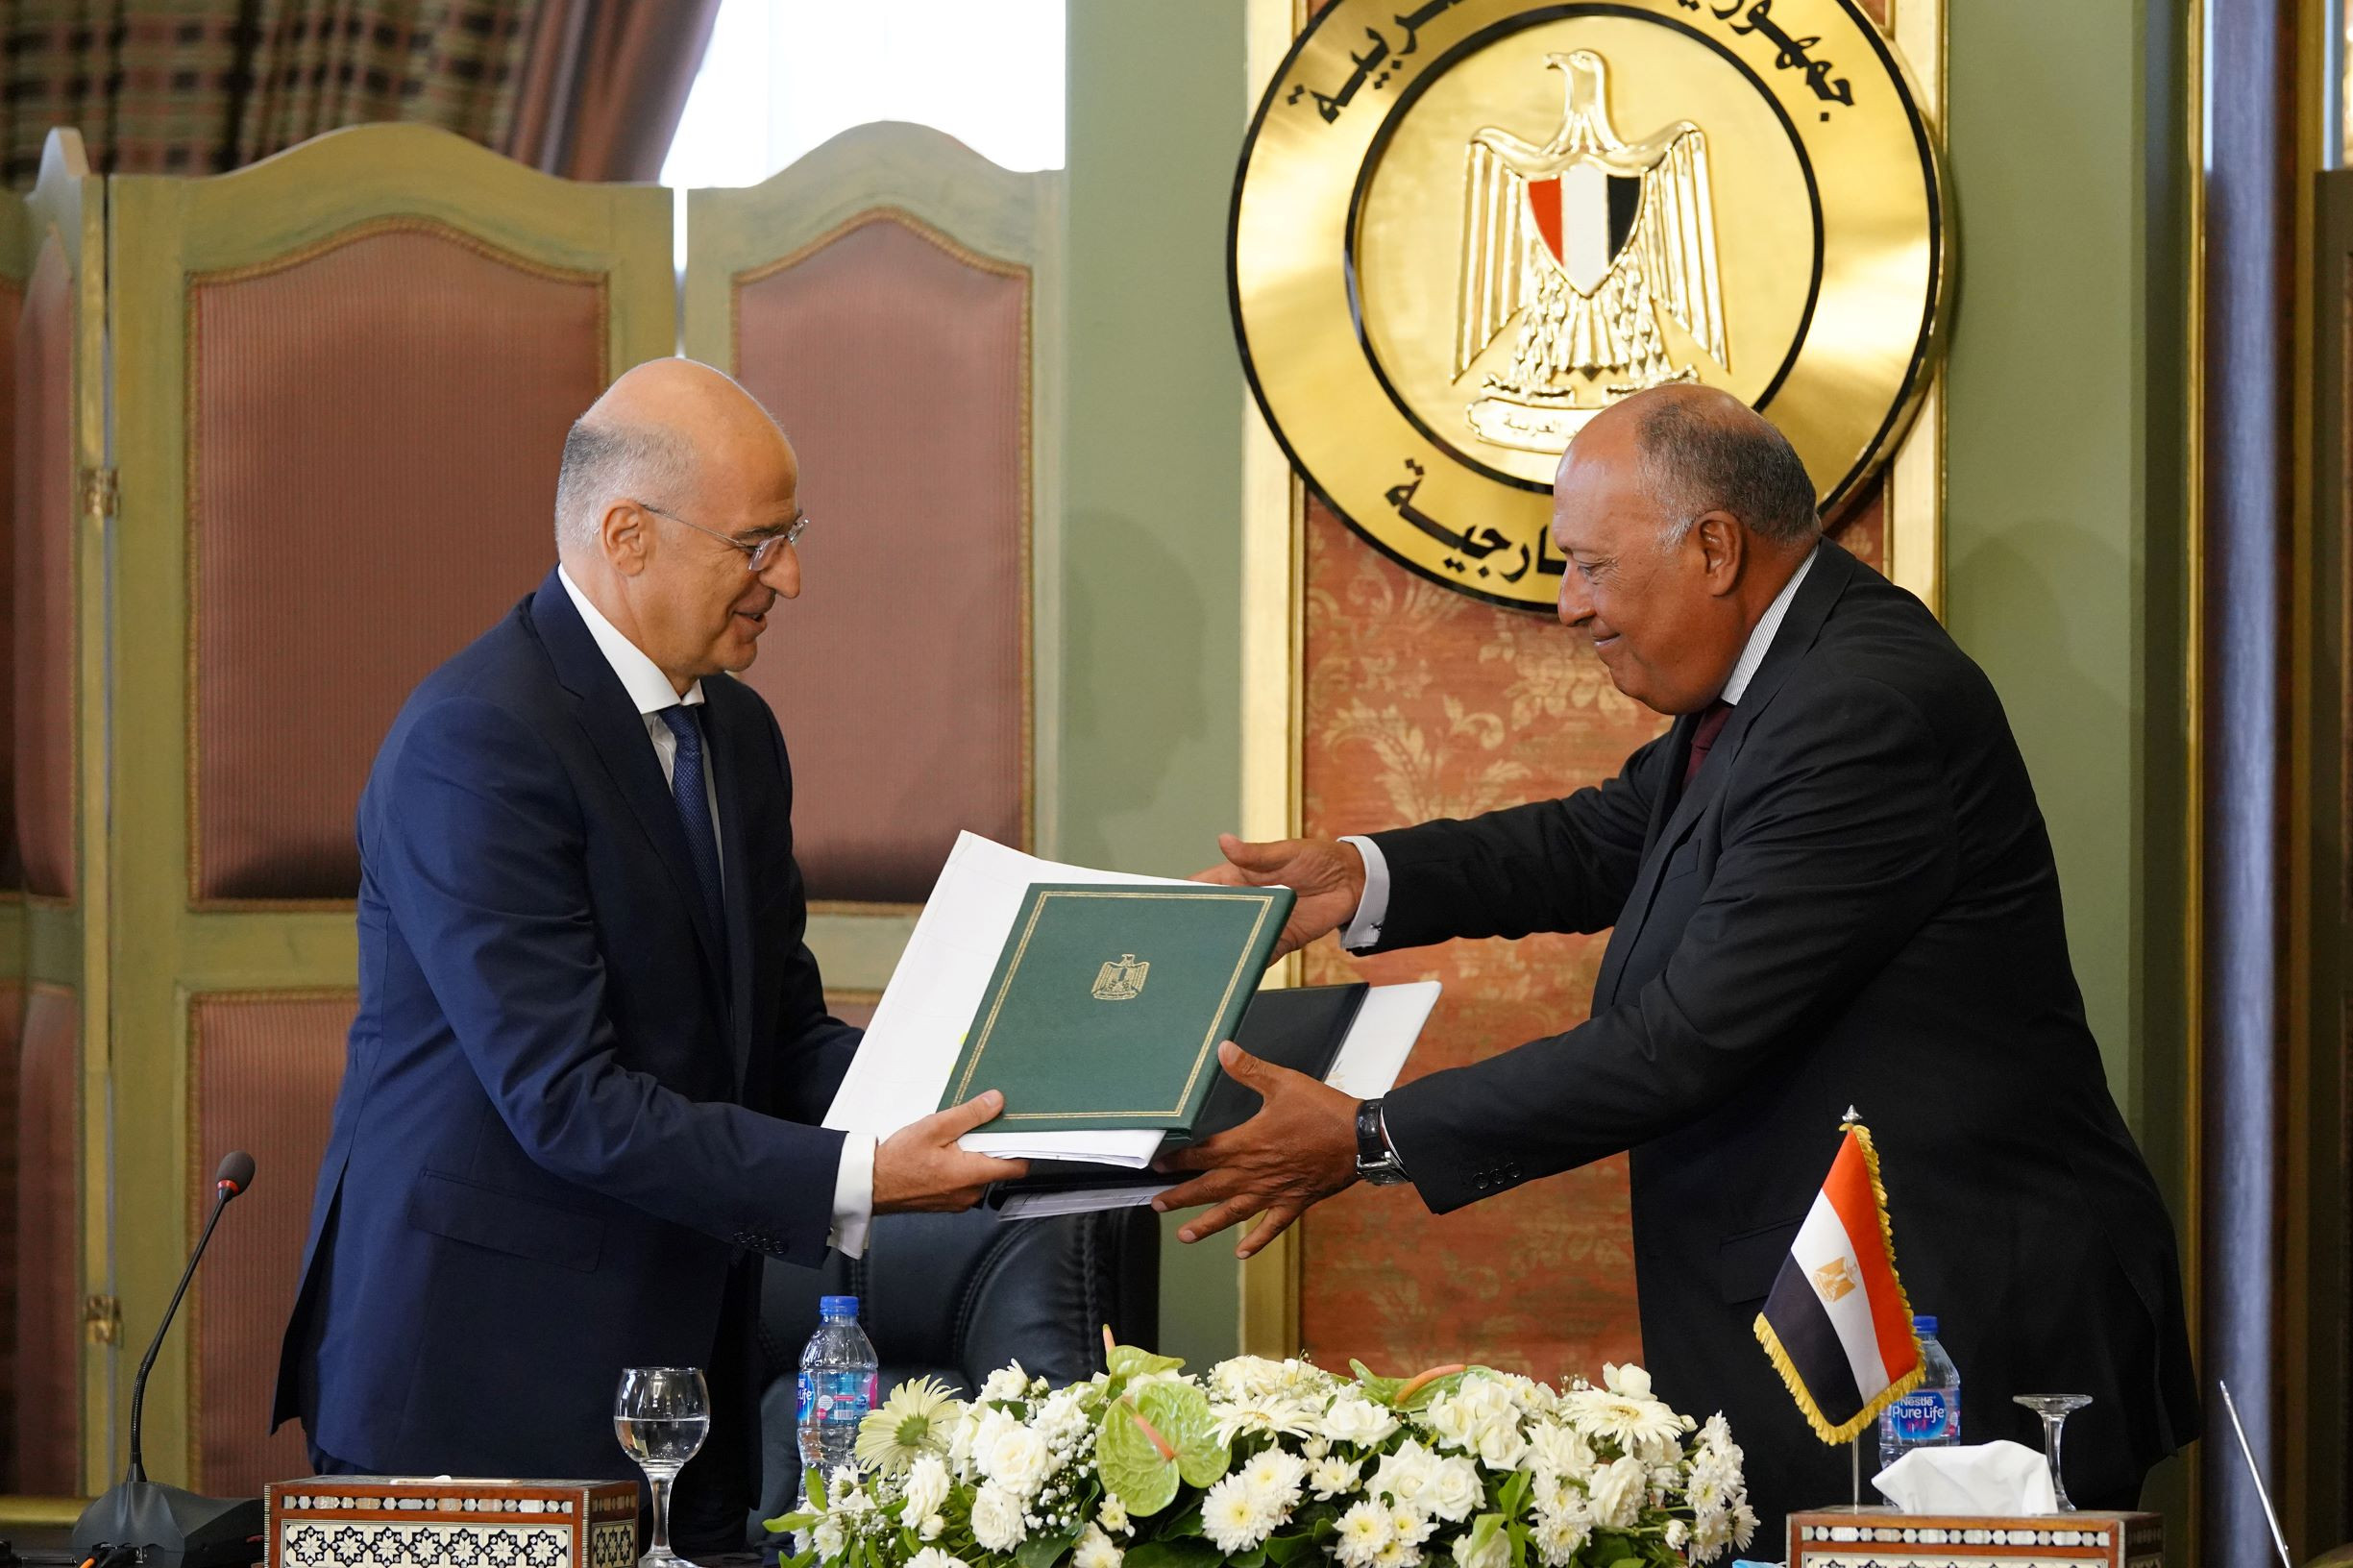 Στον Τύπο διέρρευσε η συμφωνία με την Αίγυπτο αντί επίσημης δημοσίευσης